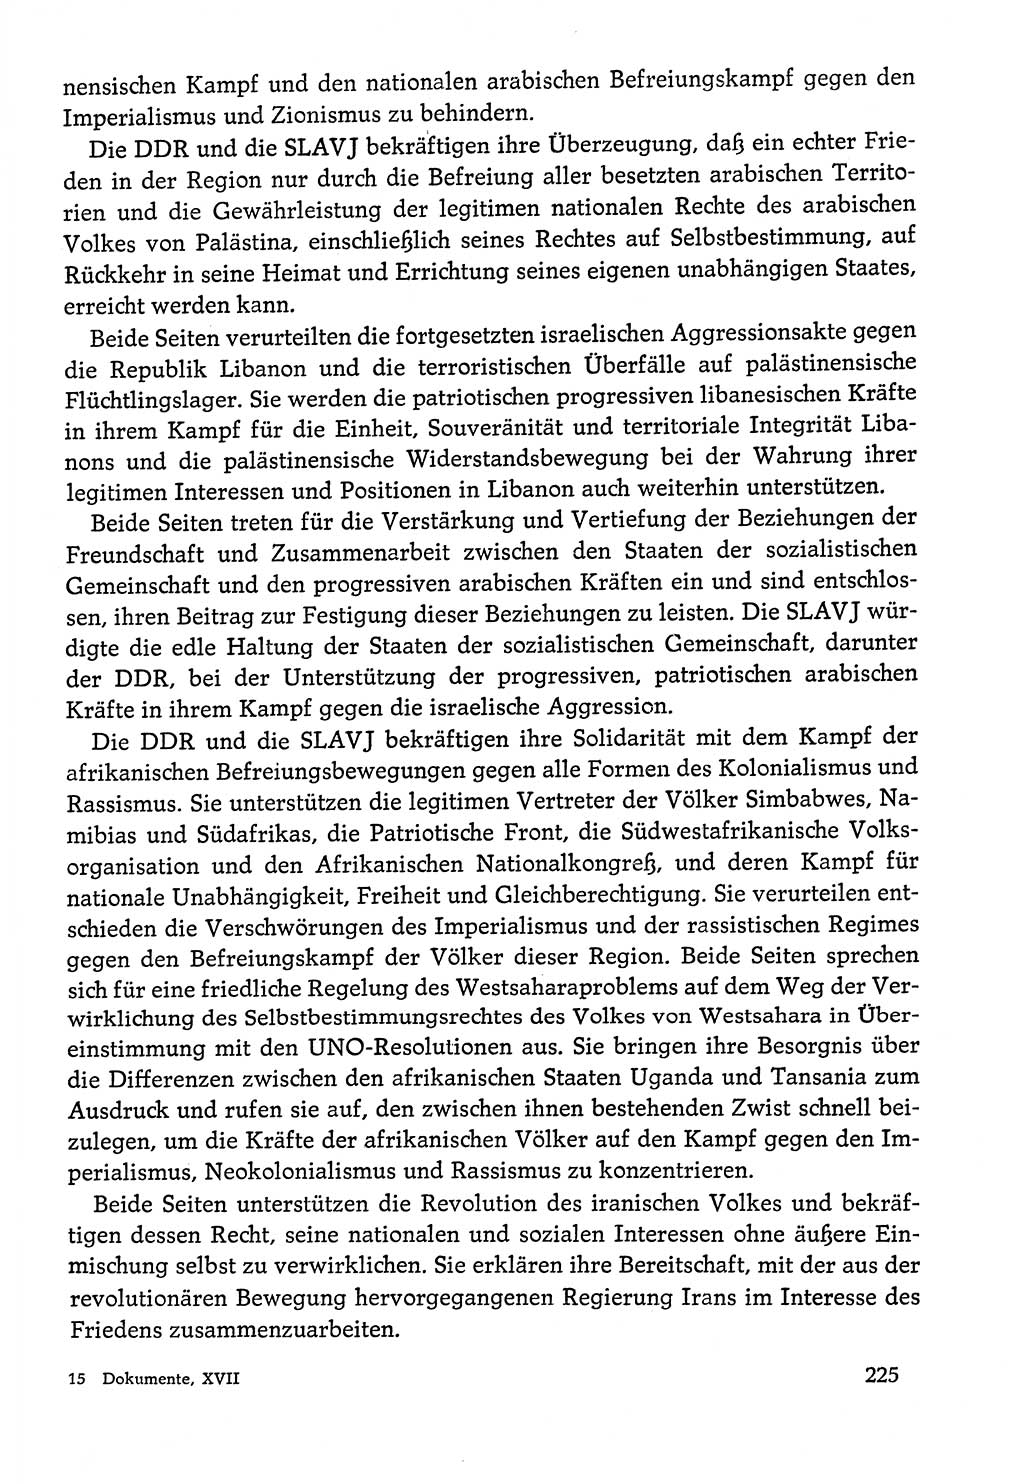 Dokumente der Sozialistischen Einheitspartei Deutschlands (SED) [Deutsche Demokratische Republik (DDR)] 1978-1979, Seite 225 (Dok. SED DDR 1978-1979, S. 225)